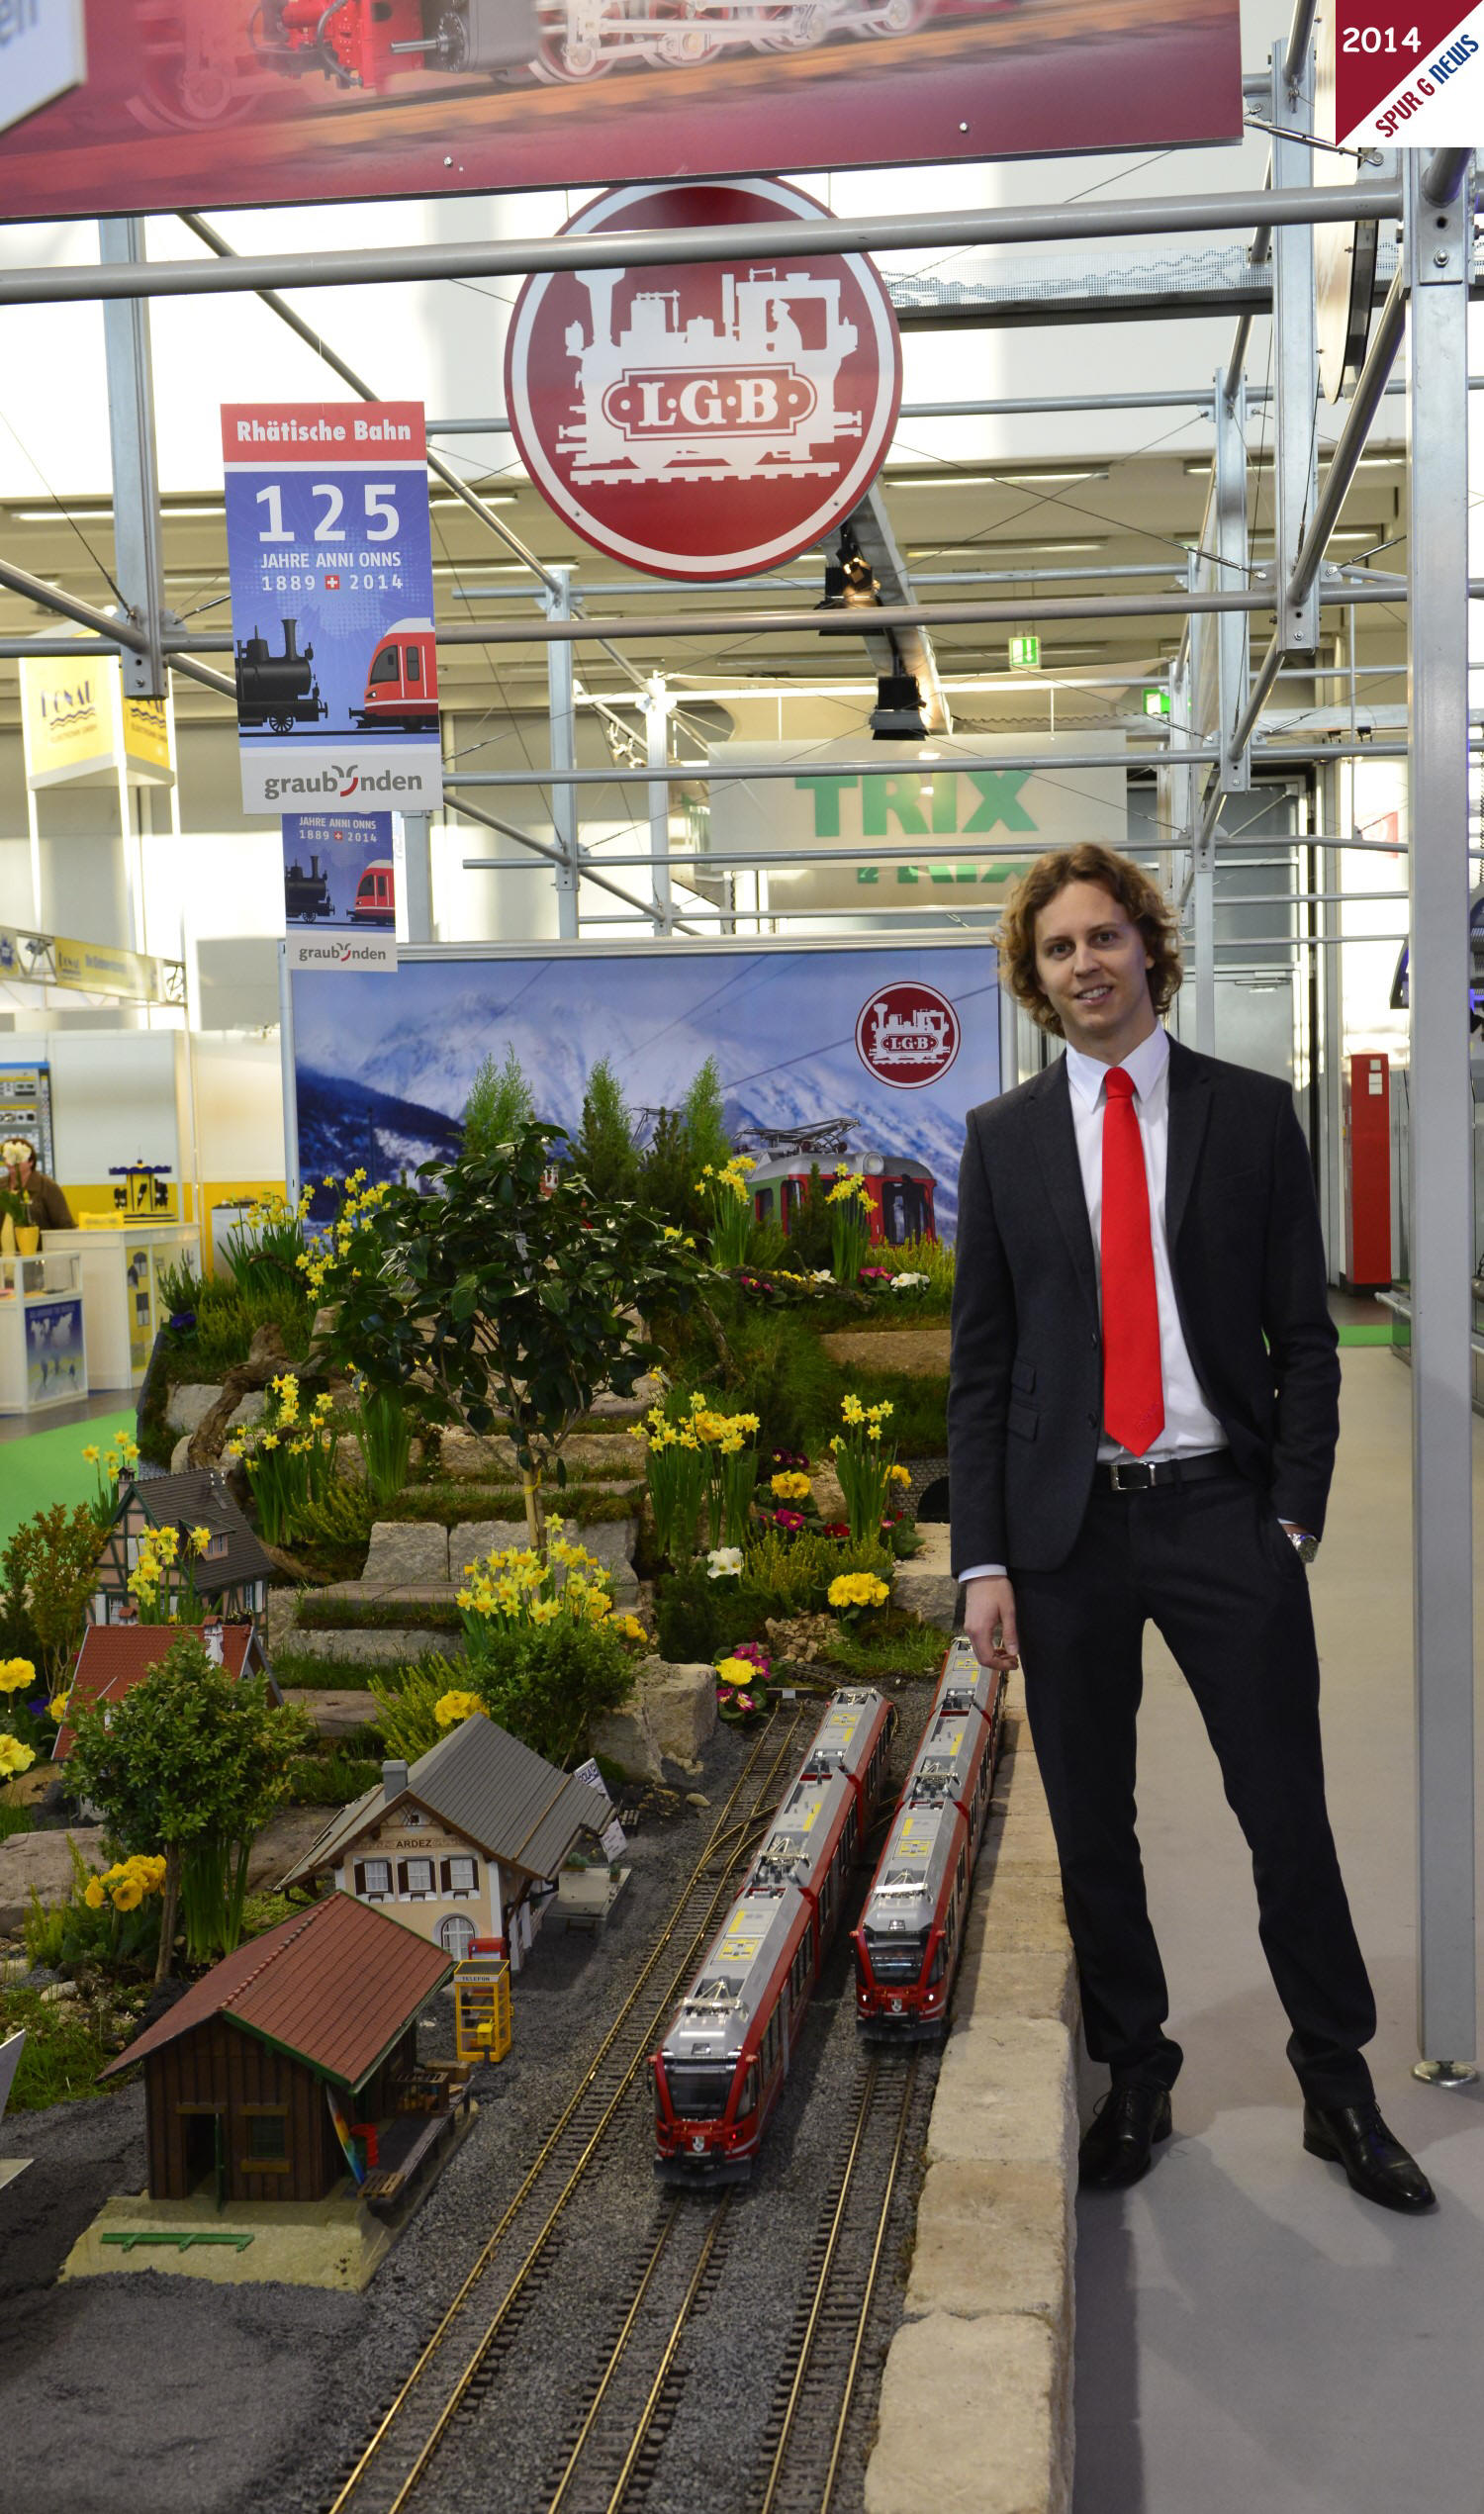 Herr Florian Sieber kann sichtlich stolz auf seine Mannschaft und die Firmengruppe Mrklin-Trix-LGB sein.Hier auf dem eigenen Messestand der Internationalen Spielwarenmesse in Nrnberg am 30.01.2014.